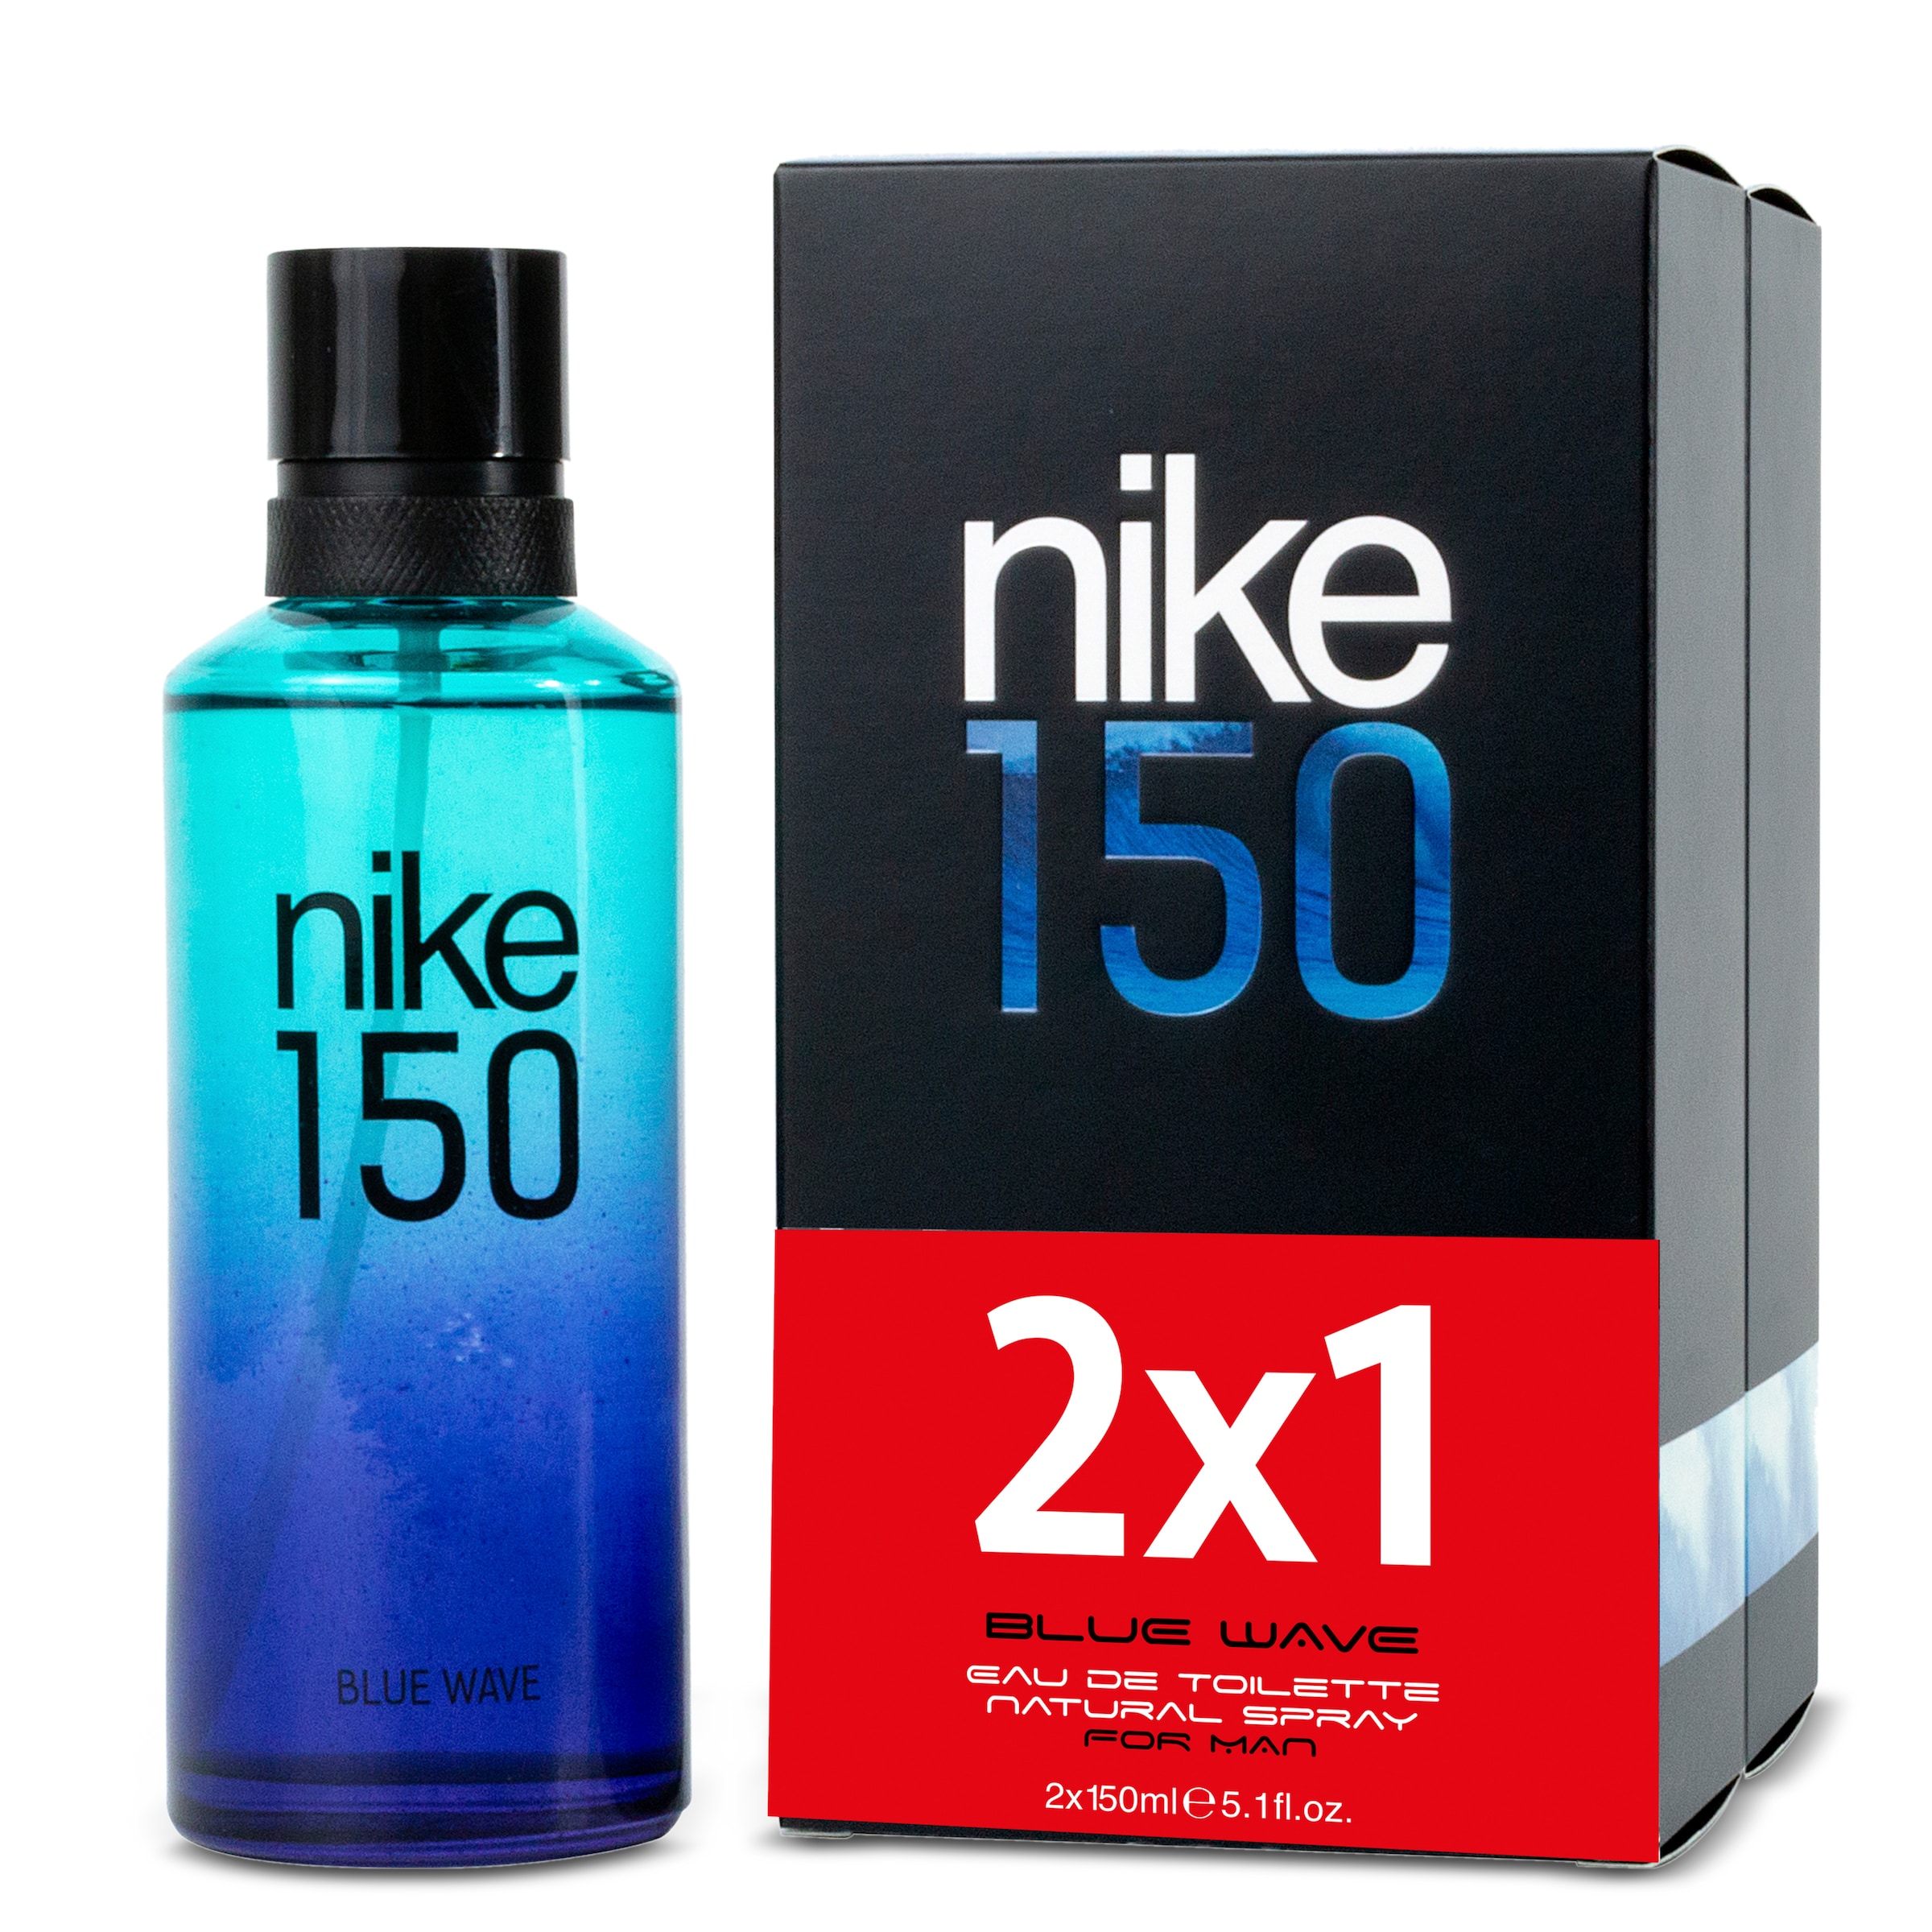 Colonia blue wave spray Nike caja 2 x 150 ml - Supermercados DIA